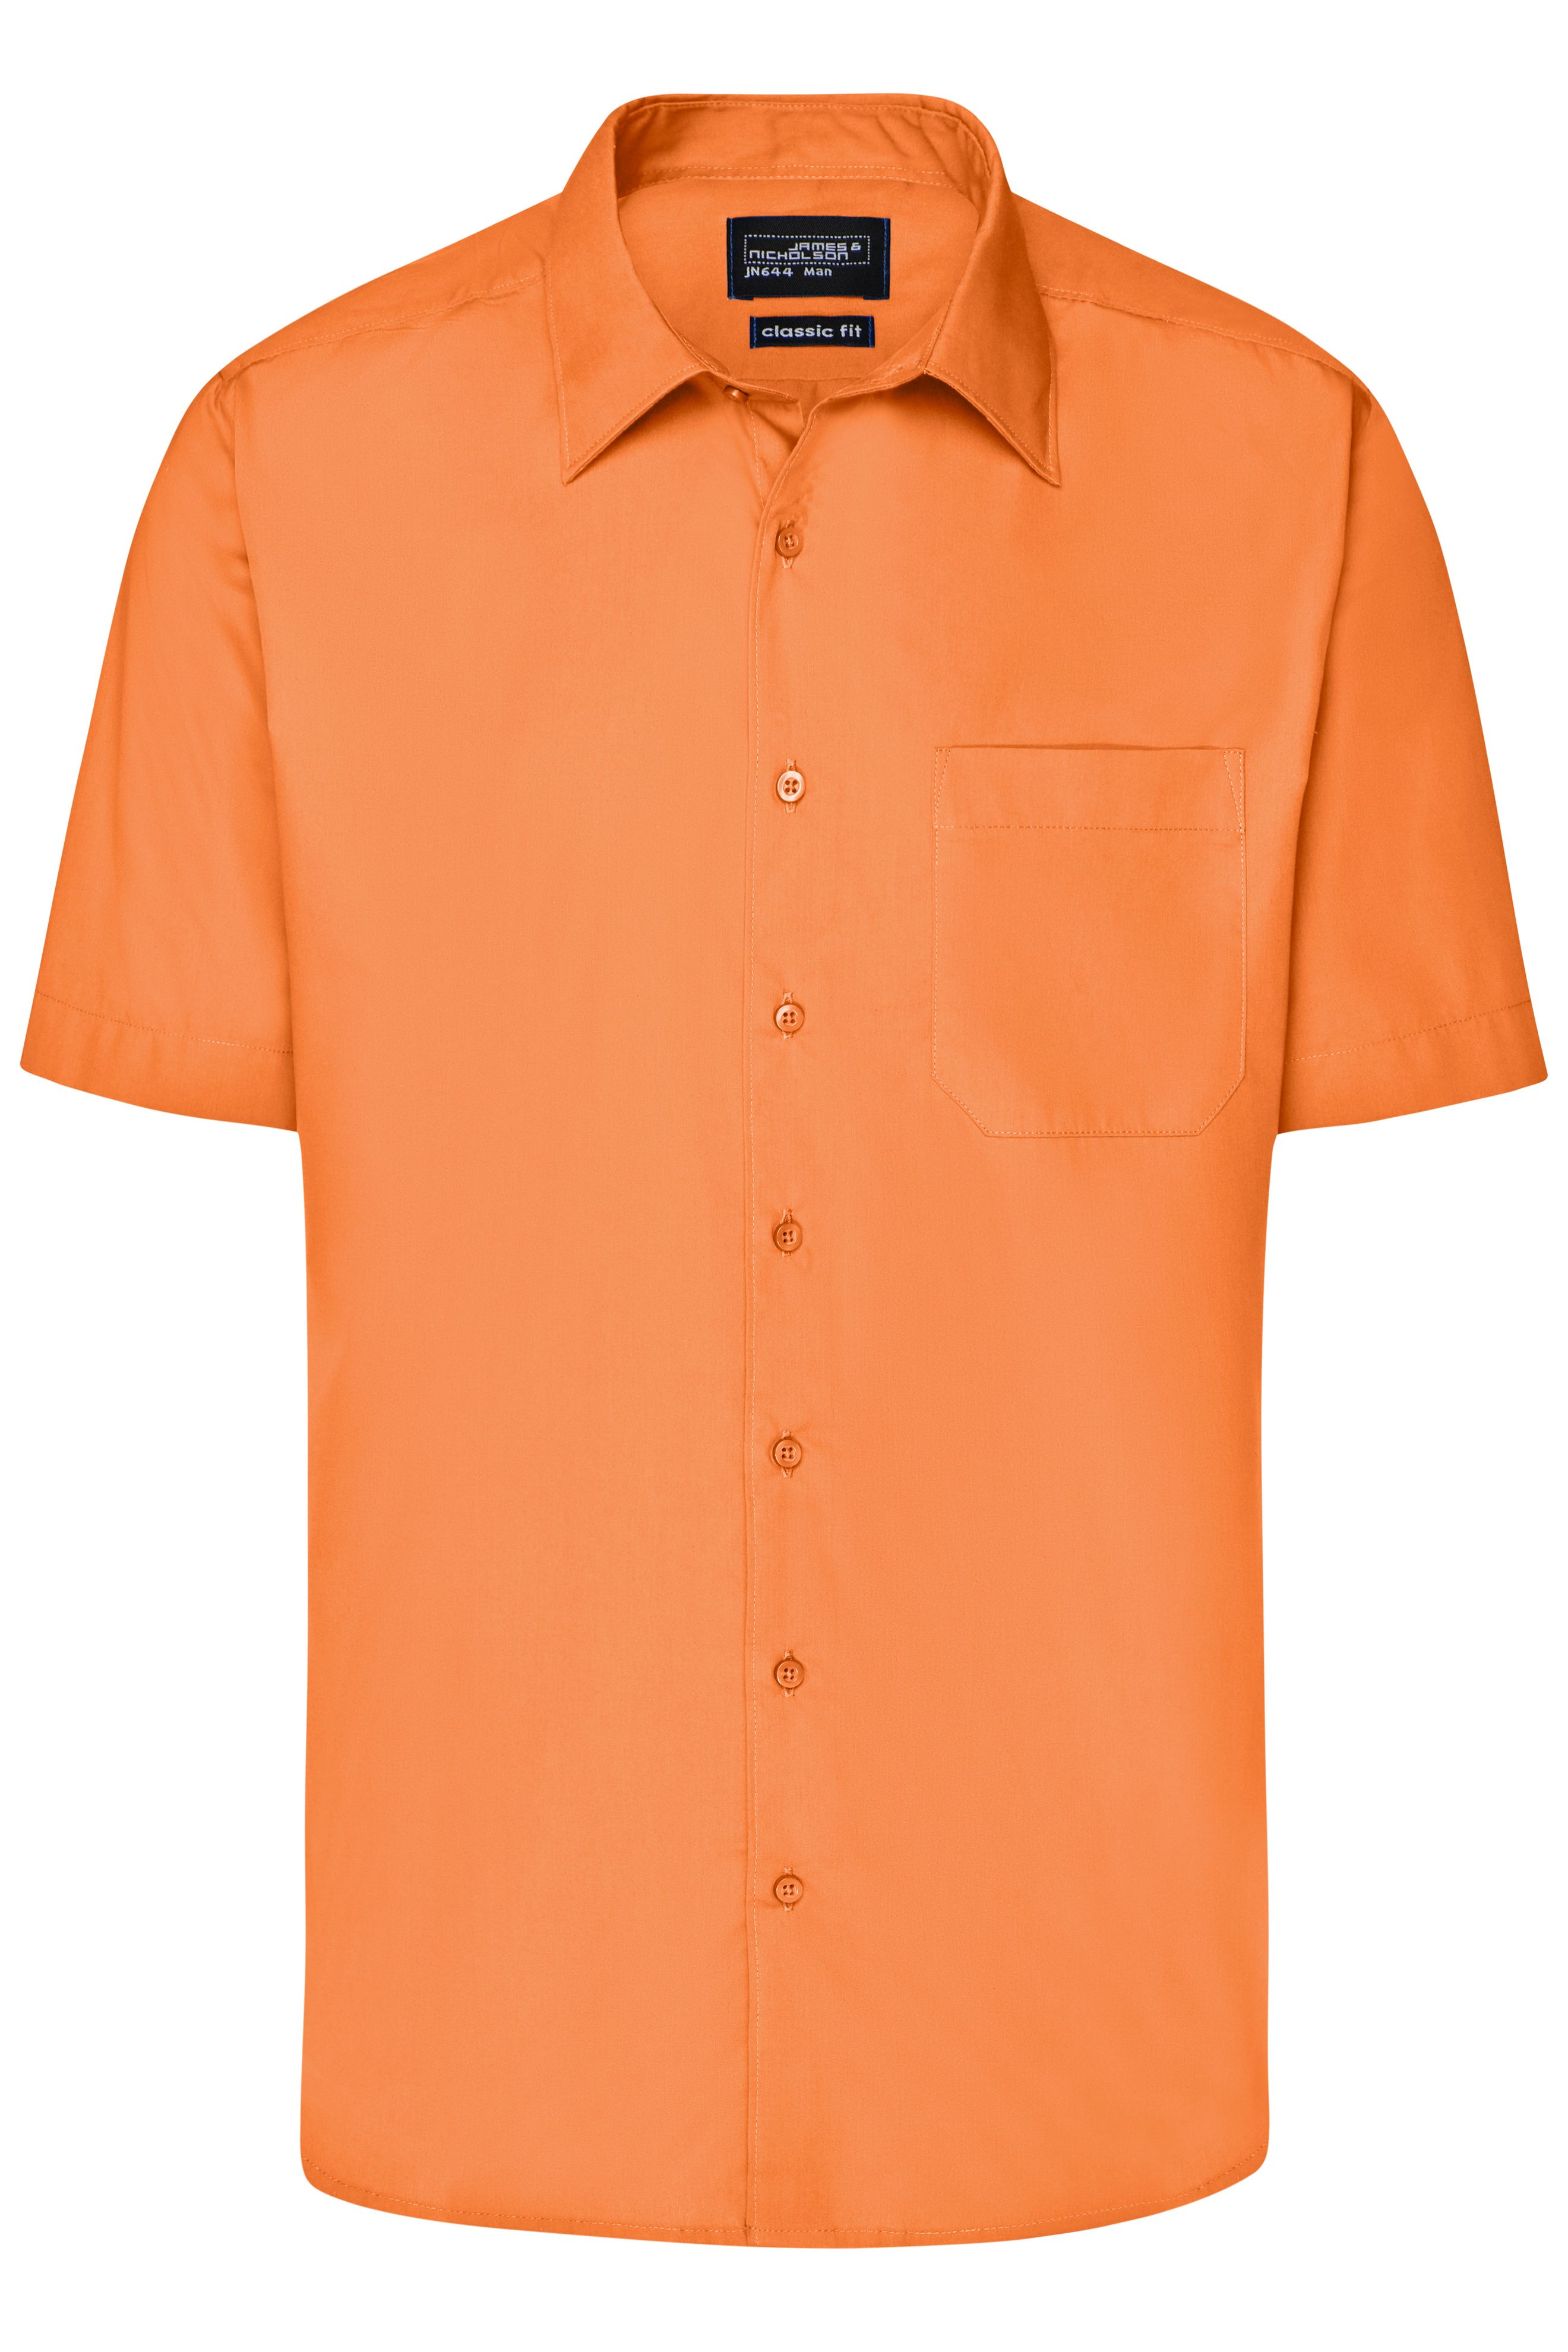 Men's Business Shirt Short-Sleeved JN644 Klassisches Shirt aus strapazierfähigem Mischgewebe